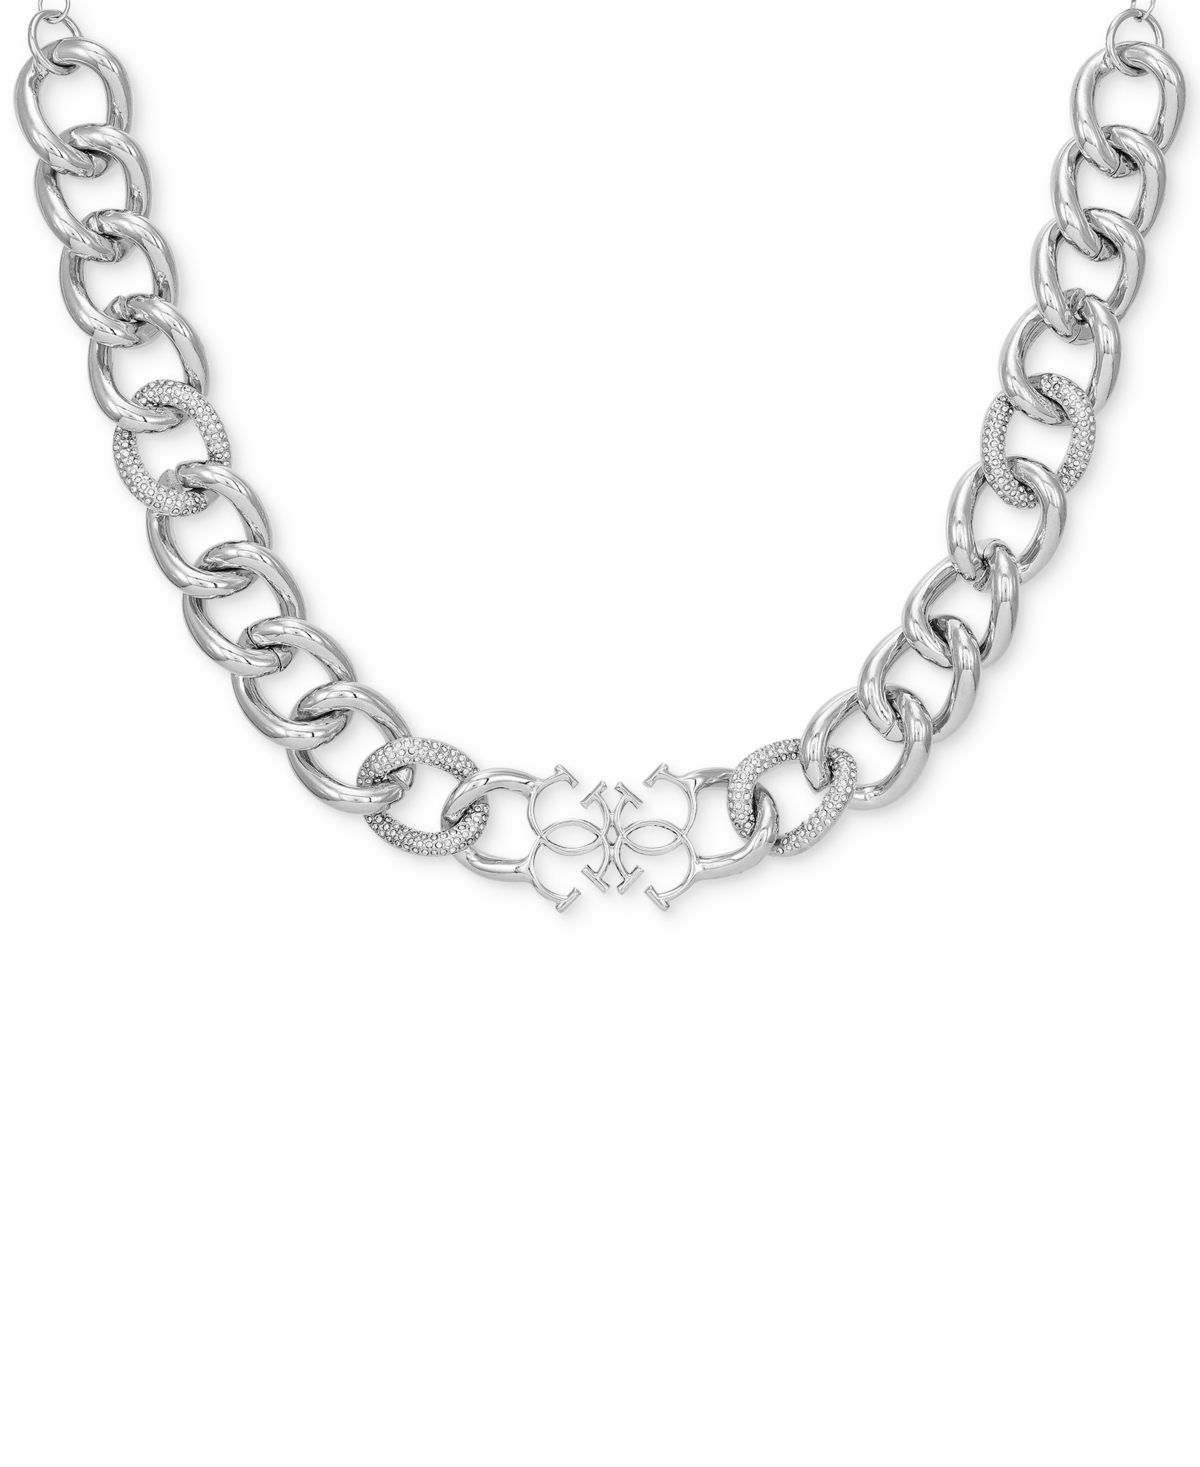 Silver-Tone Pave & Quatro G Logo Collar Necklace, 18" + 2" extender - Silver